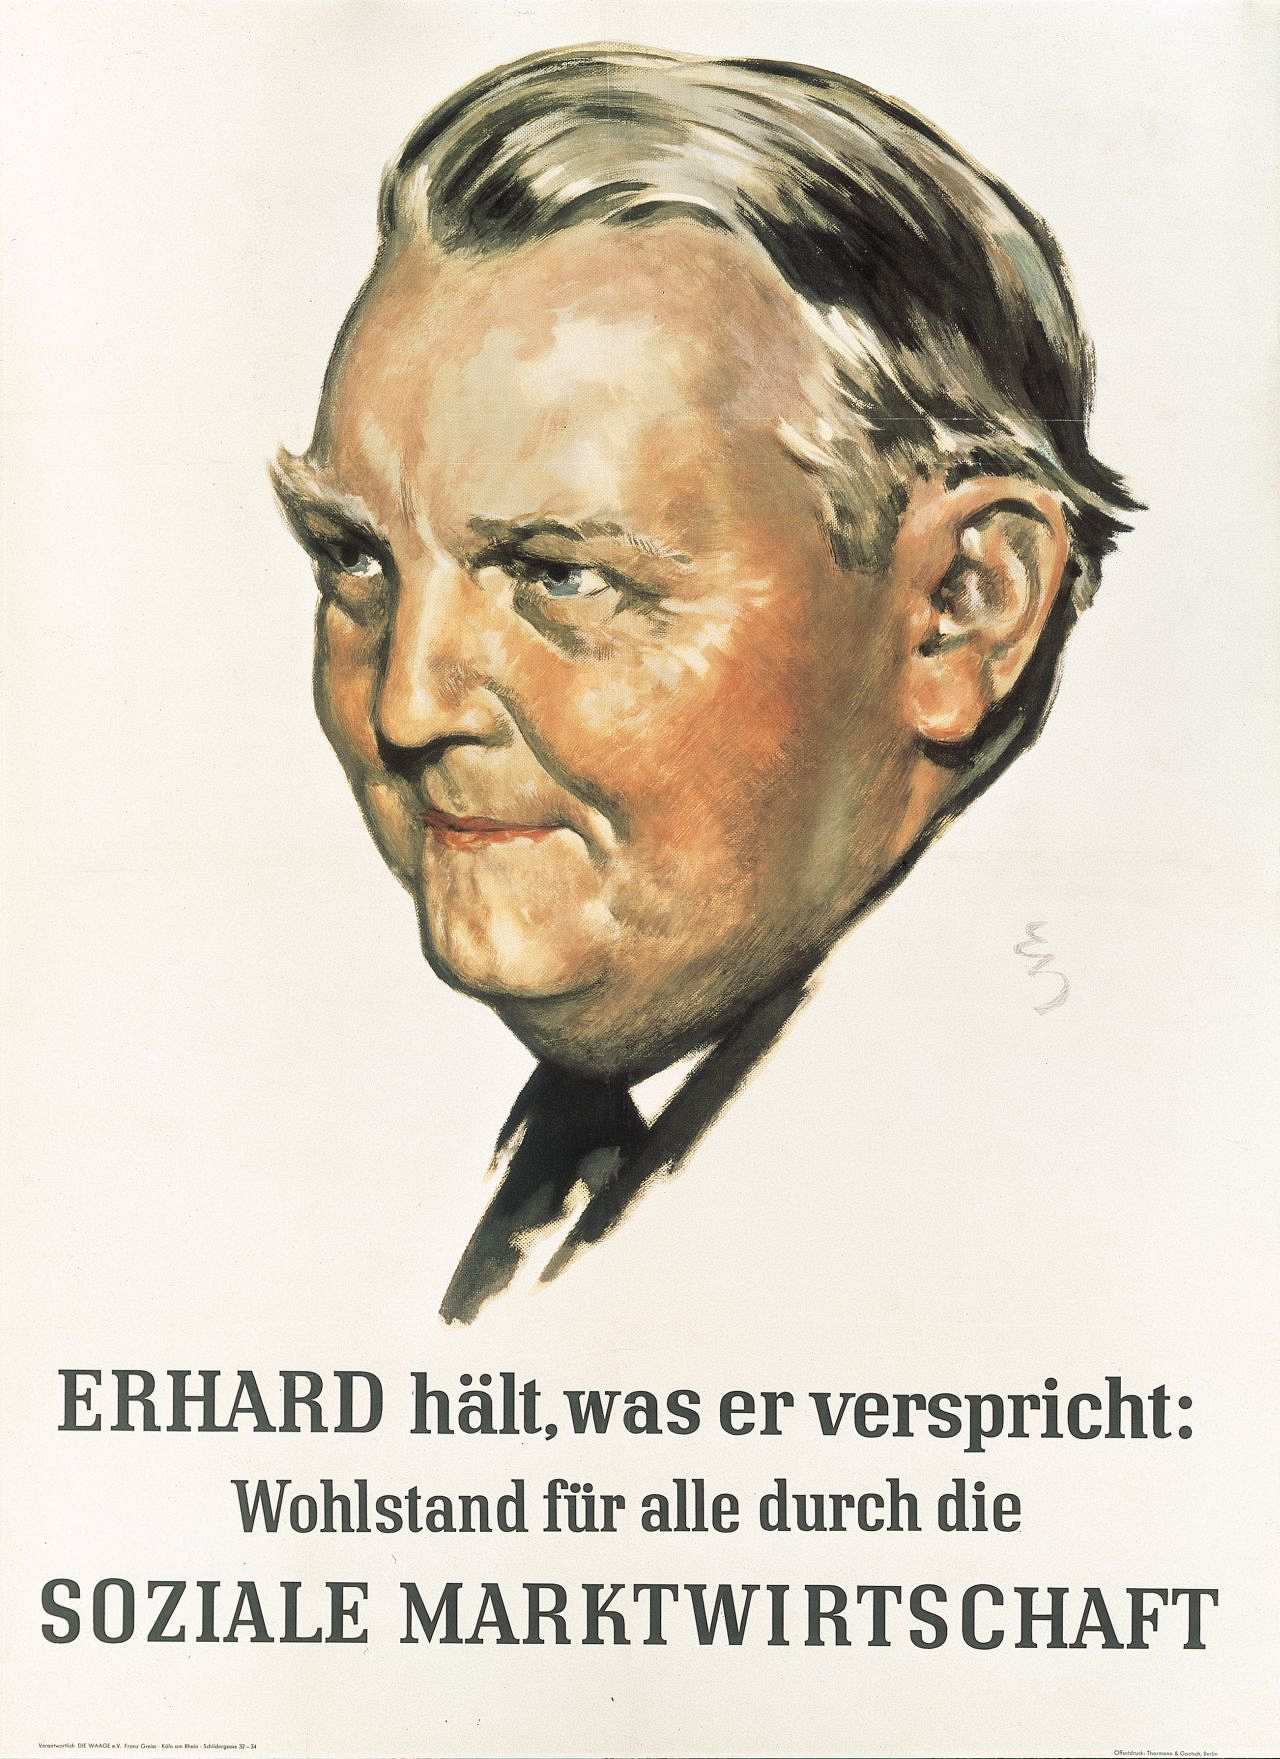 Weißer Grund mit farbiger Porträtzeichnung von Ludwig Erhard. Darunter der Wahltext: Erhard hält, was er verspricht: / Wohlstand für alle durch die  / Soziale Marktwirtschaft.